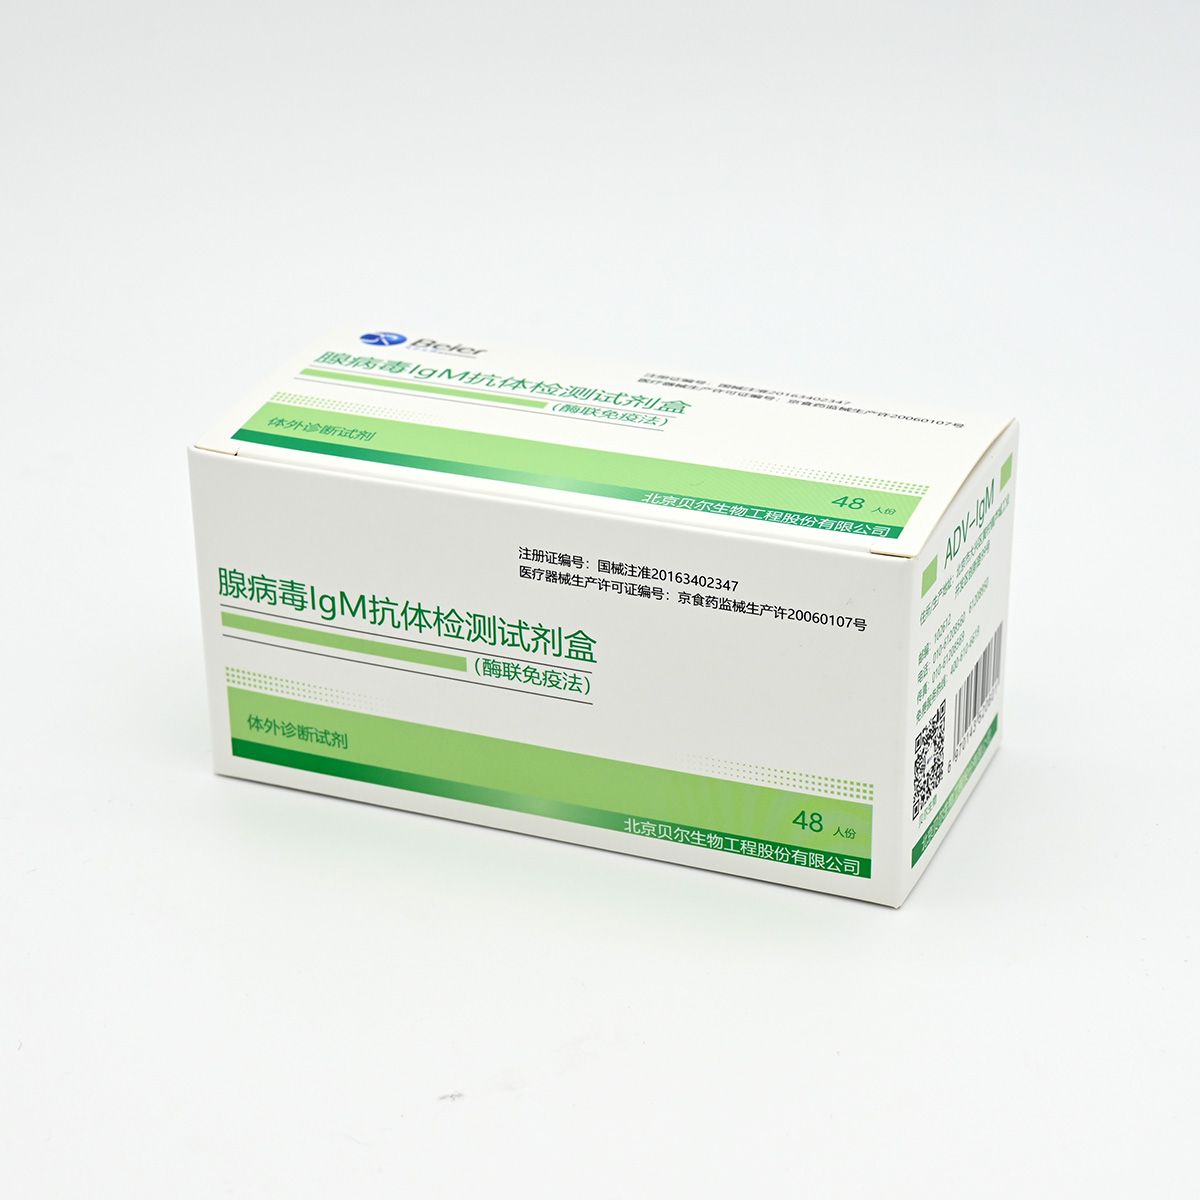 【贝尔】腺病毒IgM抗体检测试剂盒(酶联免疫法)